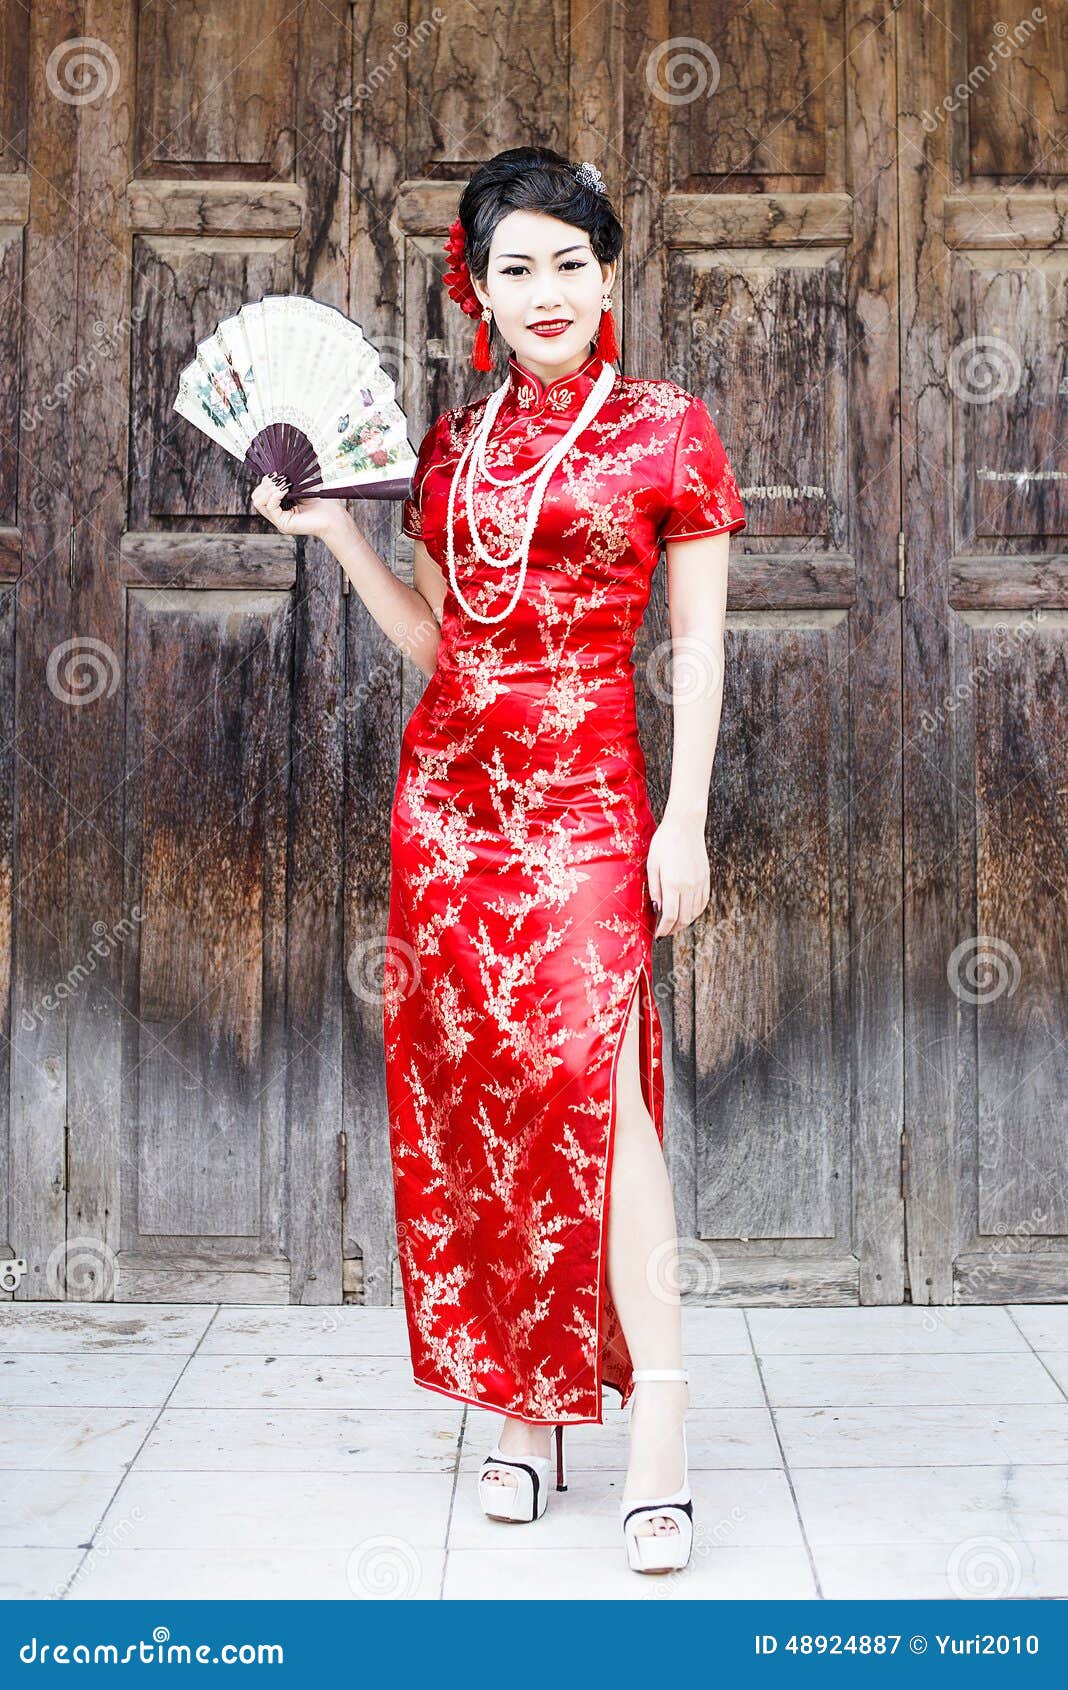 Cheongsam Tradicional Del Vestido Rojo Chino De La Mujer de archivo - Imagen de ropa, joven: 48924887